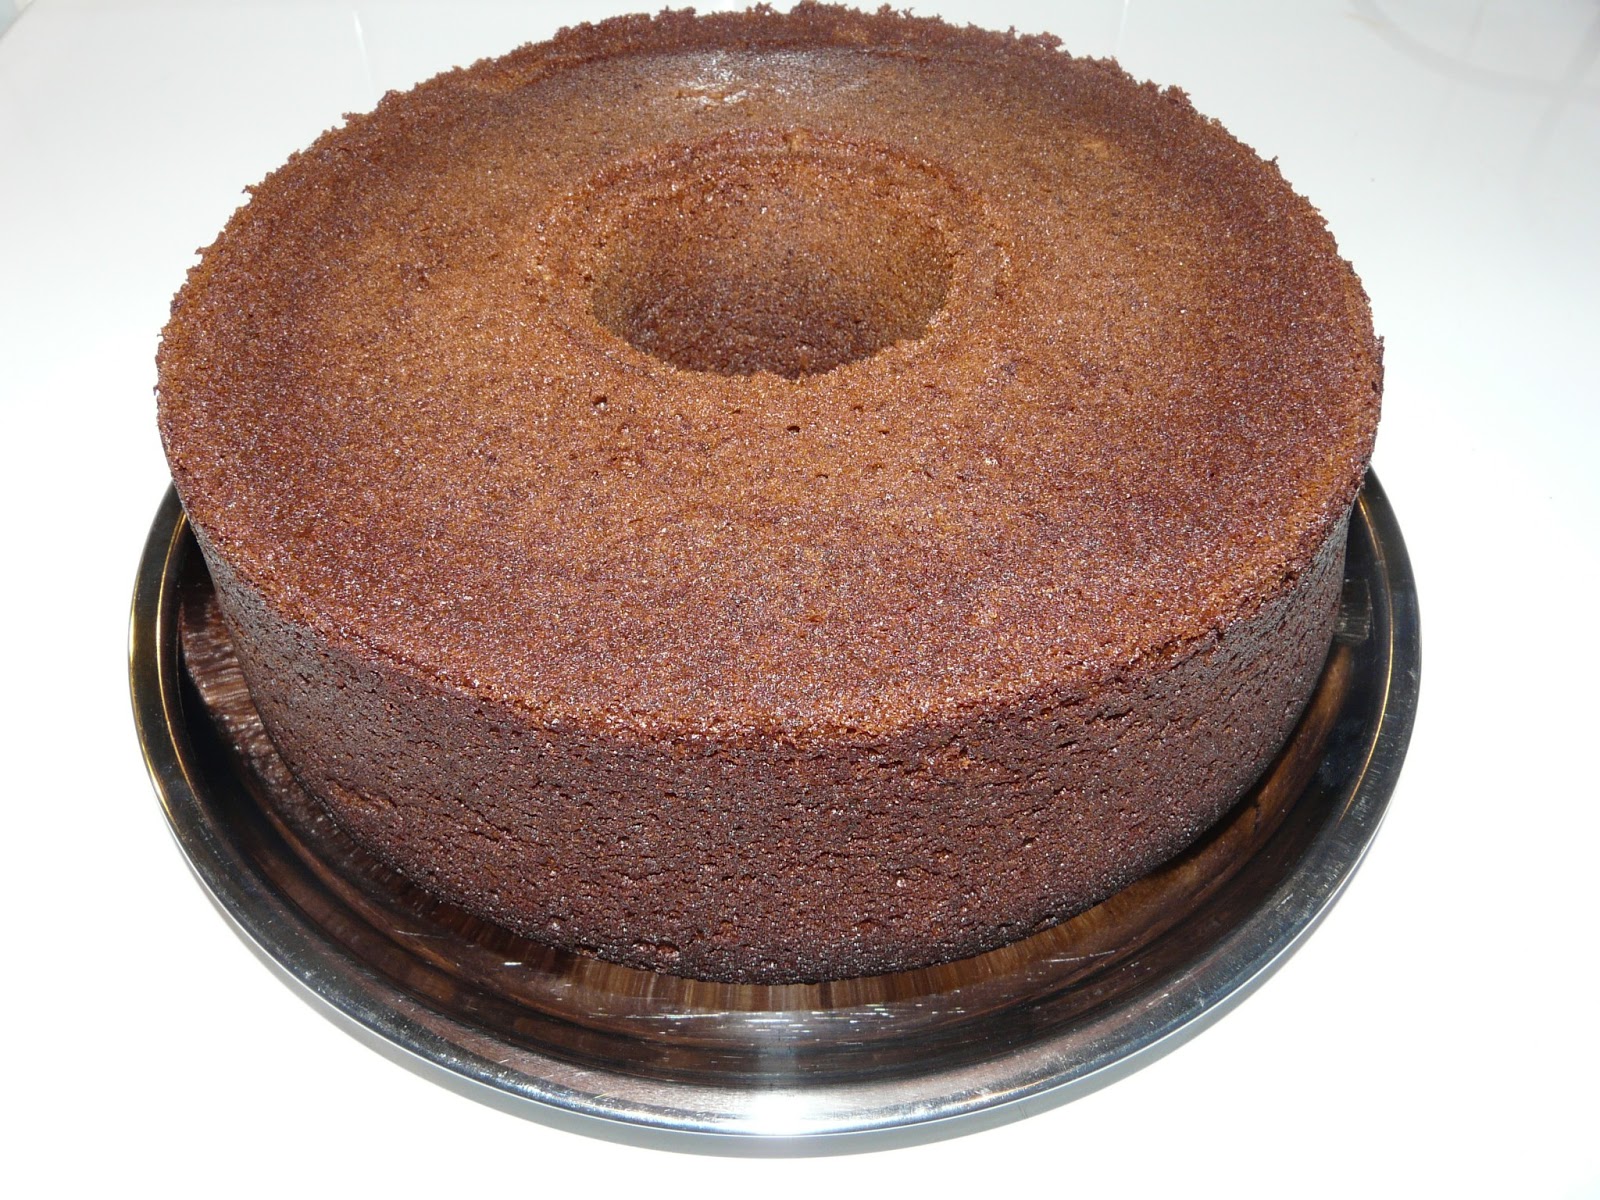 الوصفات المطبخية والمنزلية التي تقدم على chada elousraفي راديو chada Fm الجزء الثاني    Cake+chocolat+orange+2